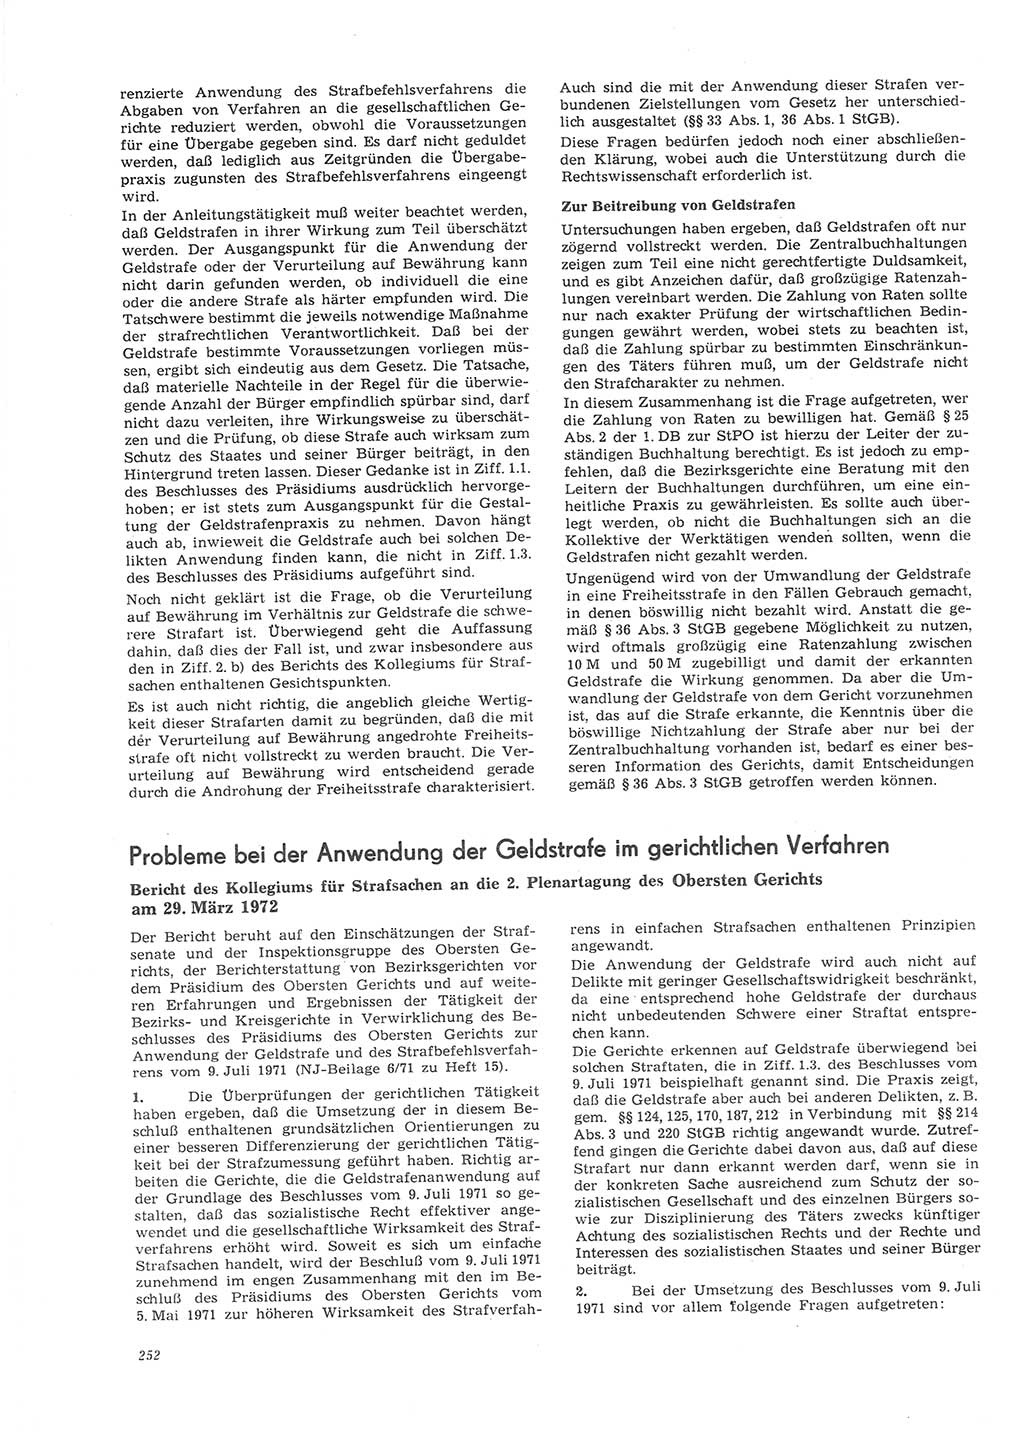 Neue Justiz (NJ), Zeitschrift für Recht und Rechtswissenschaft [Deutsche Demokratische Republik (DDR)], 26. Jahrgang 1972, Seite 252 (NJ DDR 1972, S. 252)